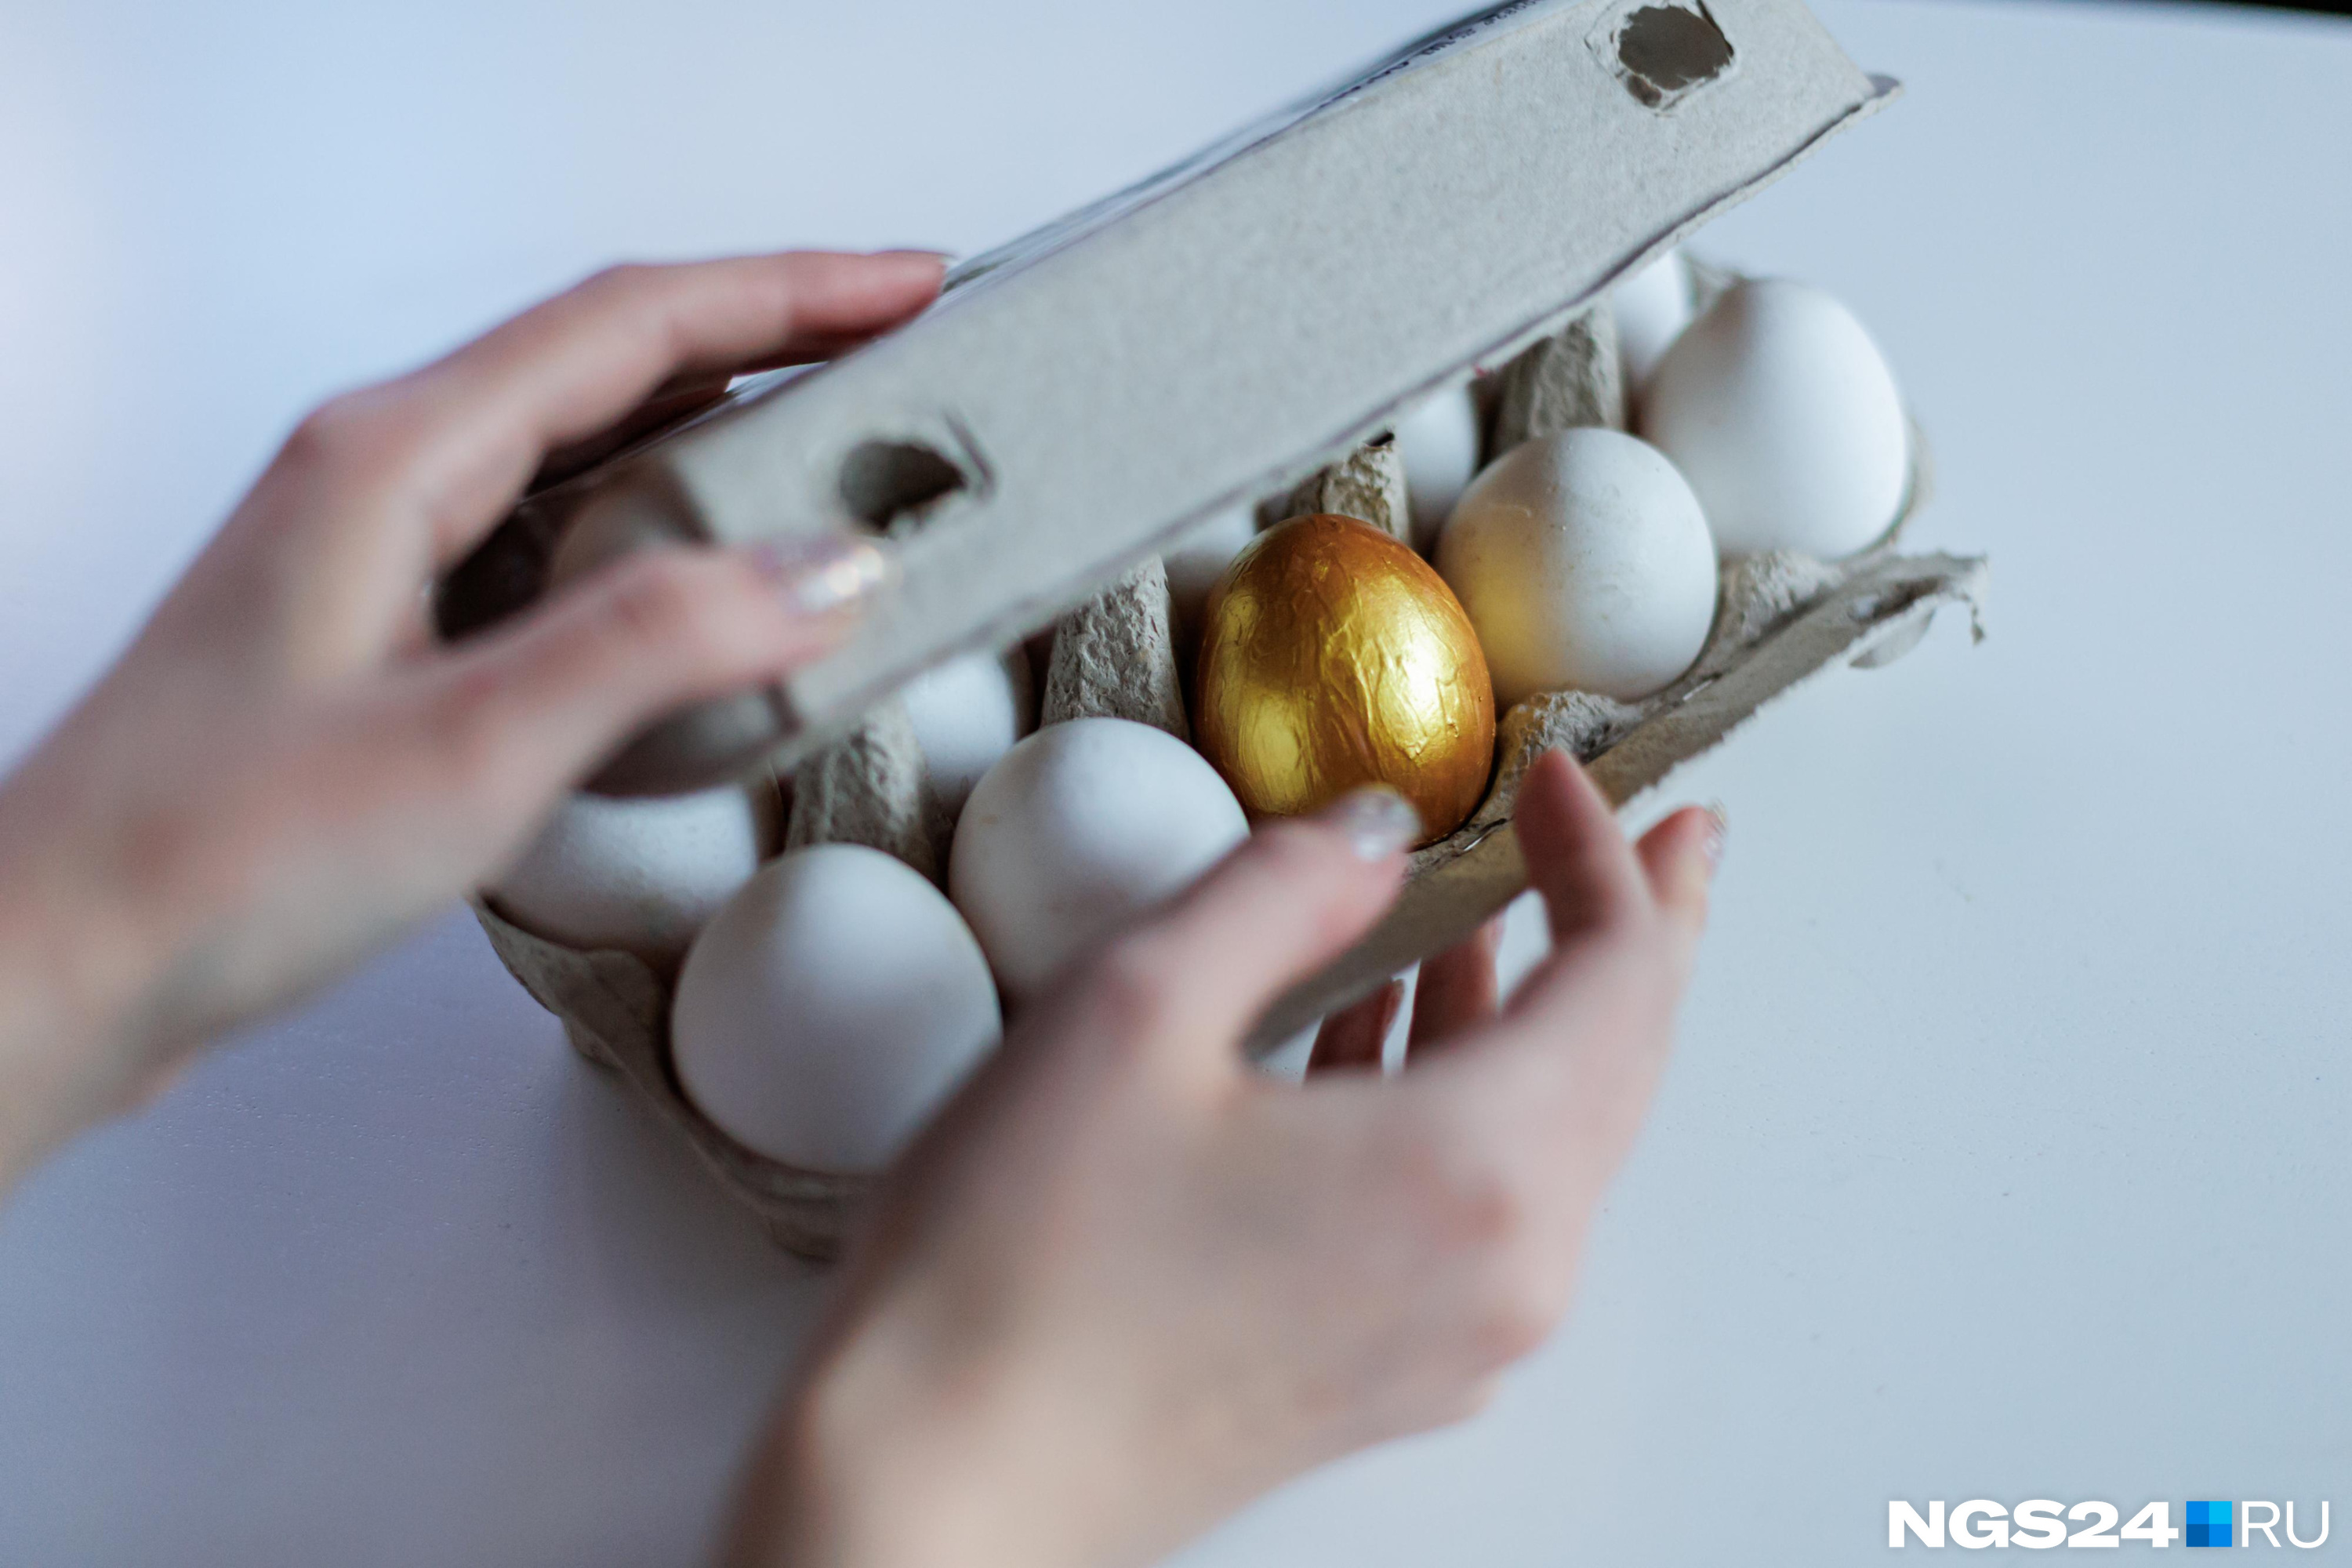 Стоят как Фаберже: почему кузбасские яйца оказались дороже привозных